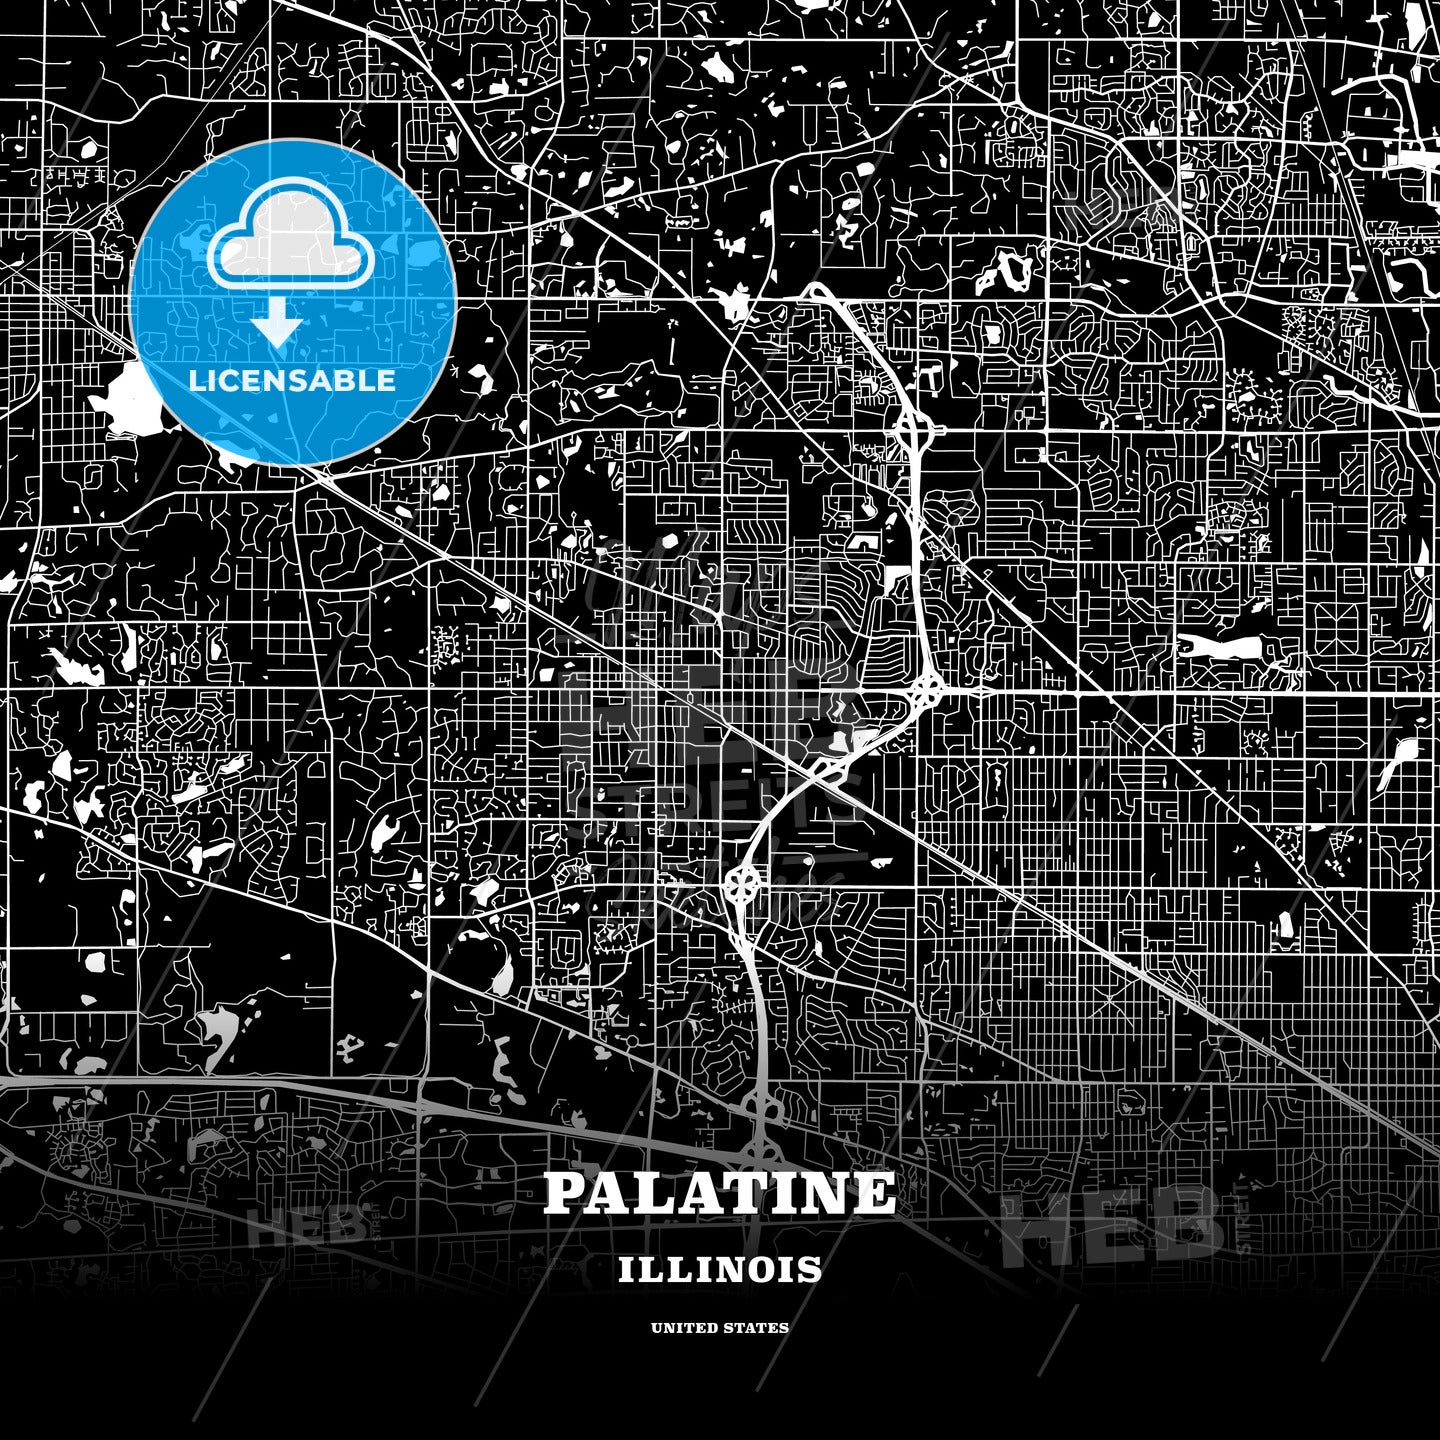 Palatine, Illinois, USA map